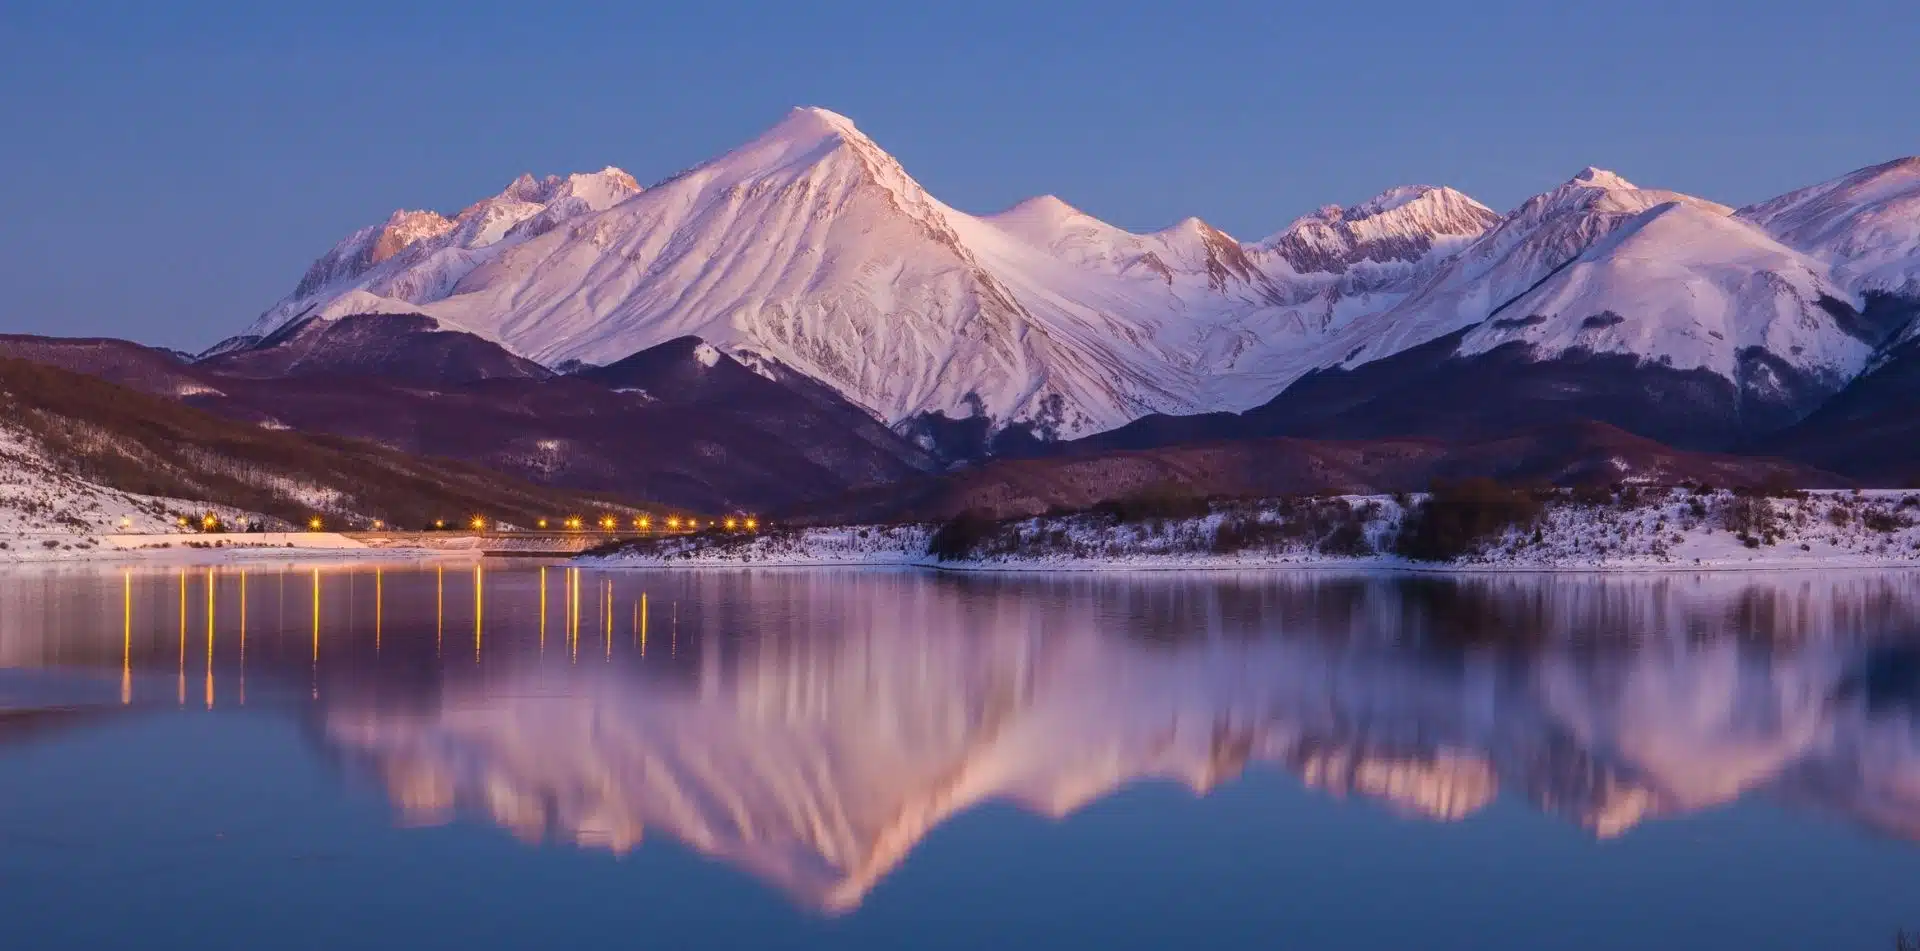 Alaska's stunning mountain scenery